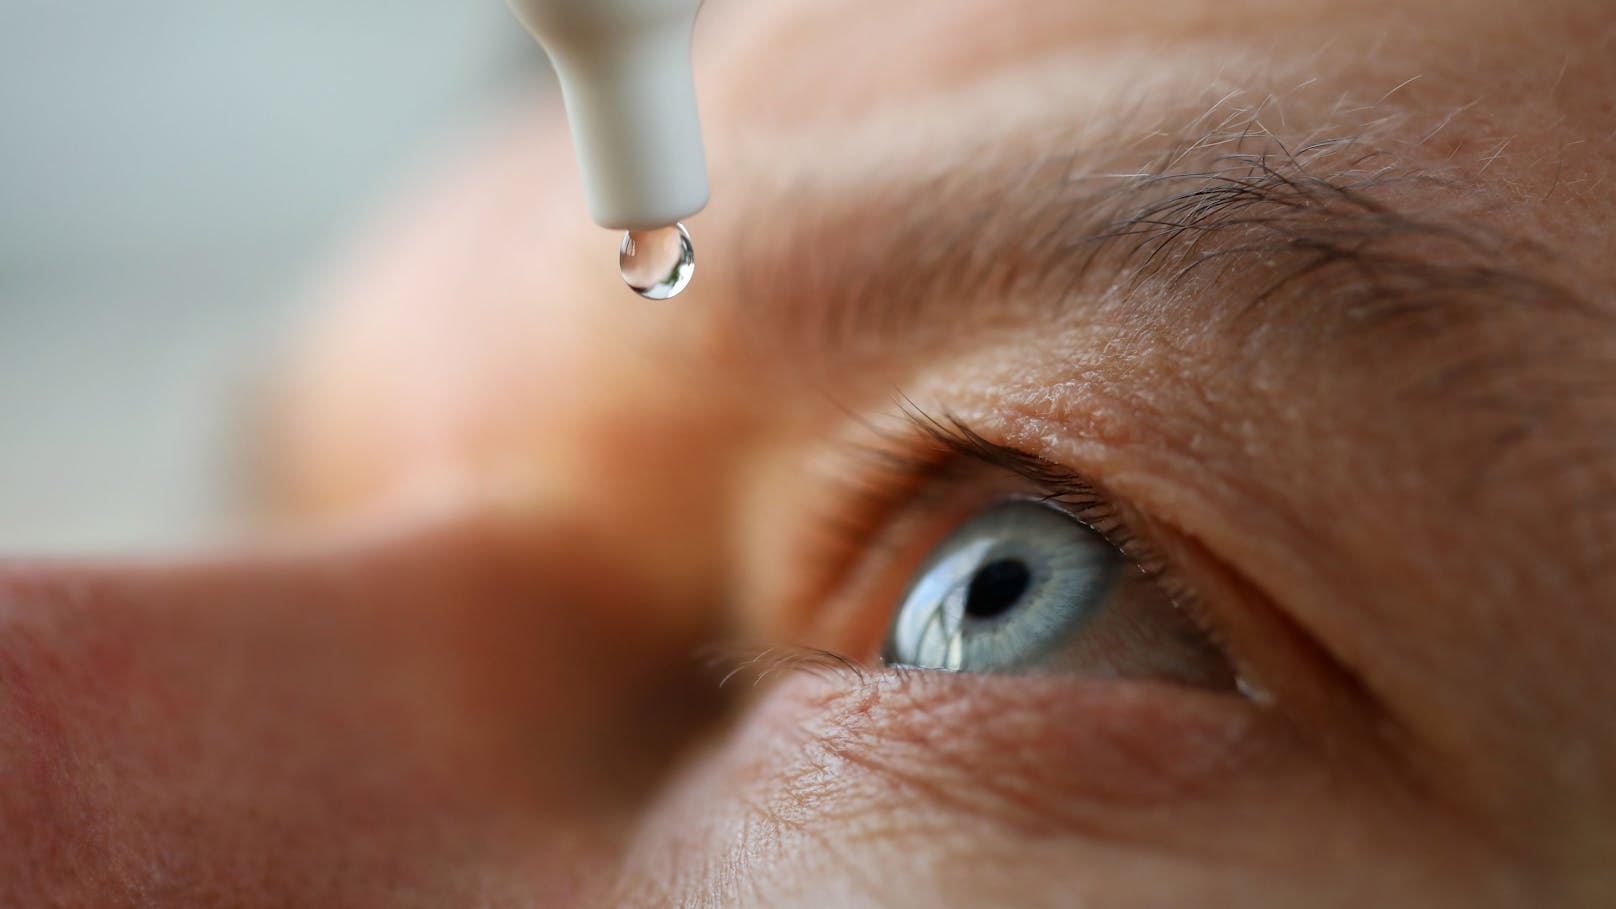 Für viele Menschen hat die Verwendung der Augentropfen schwere Folgen, für drei Menschen endete sie sogar tödlich.